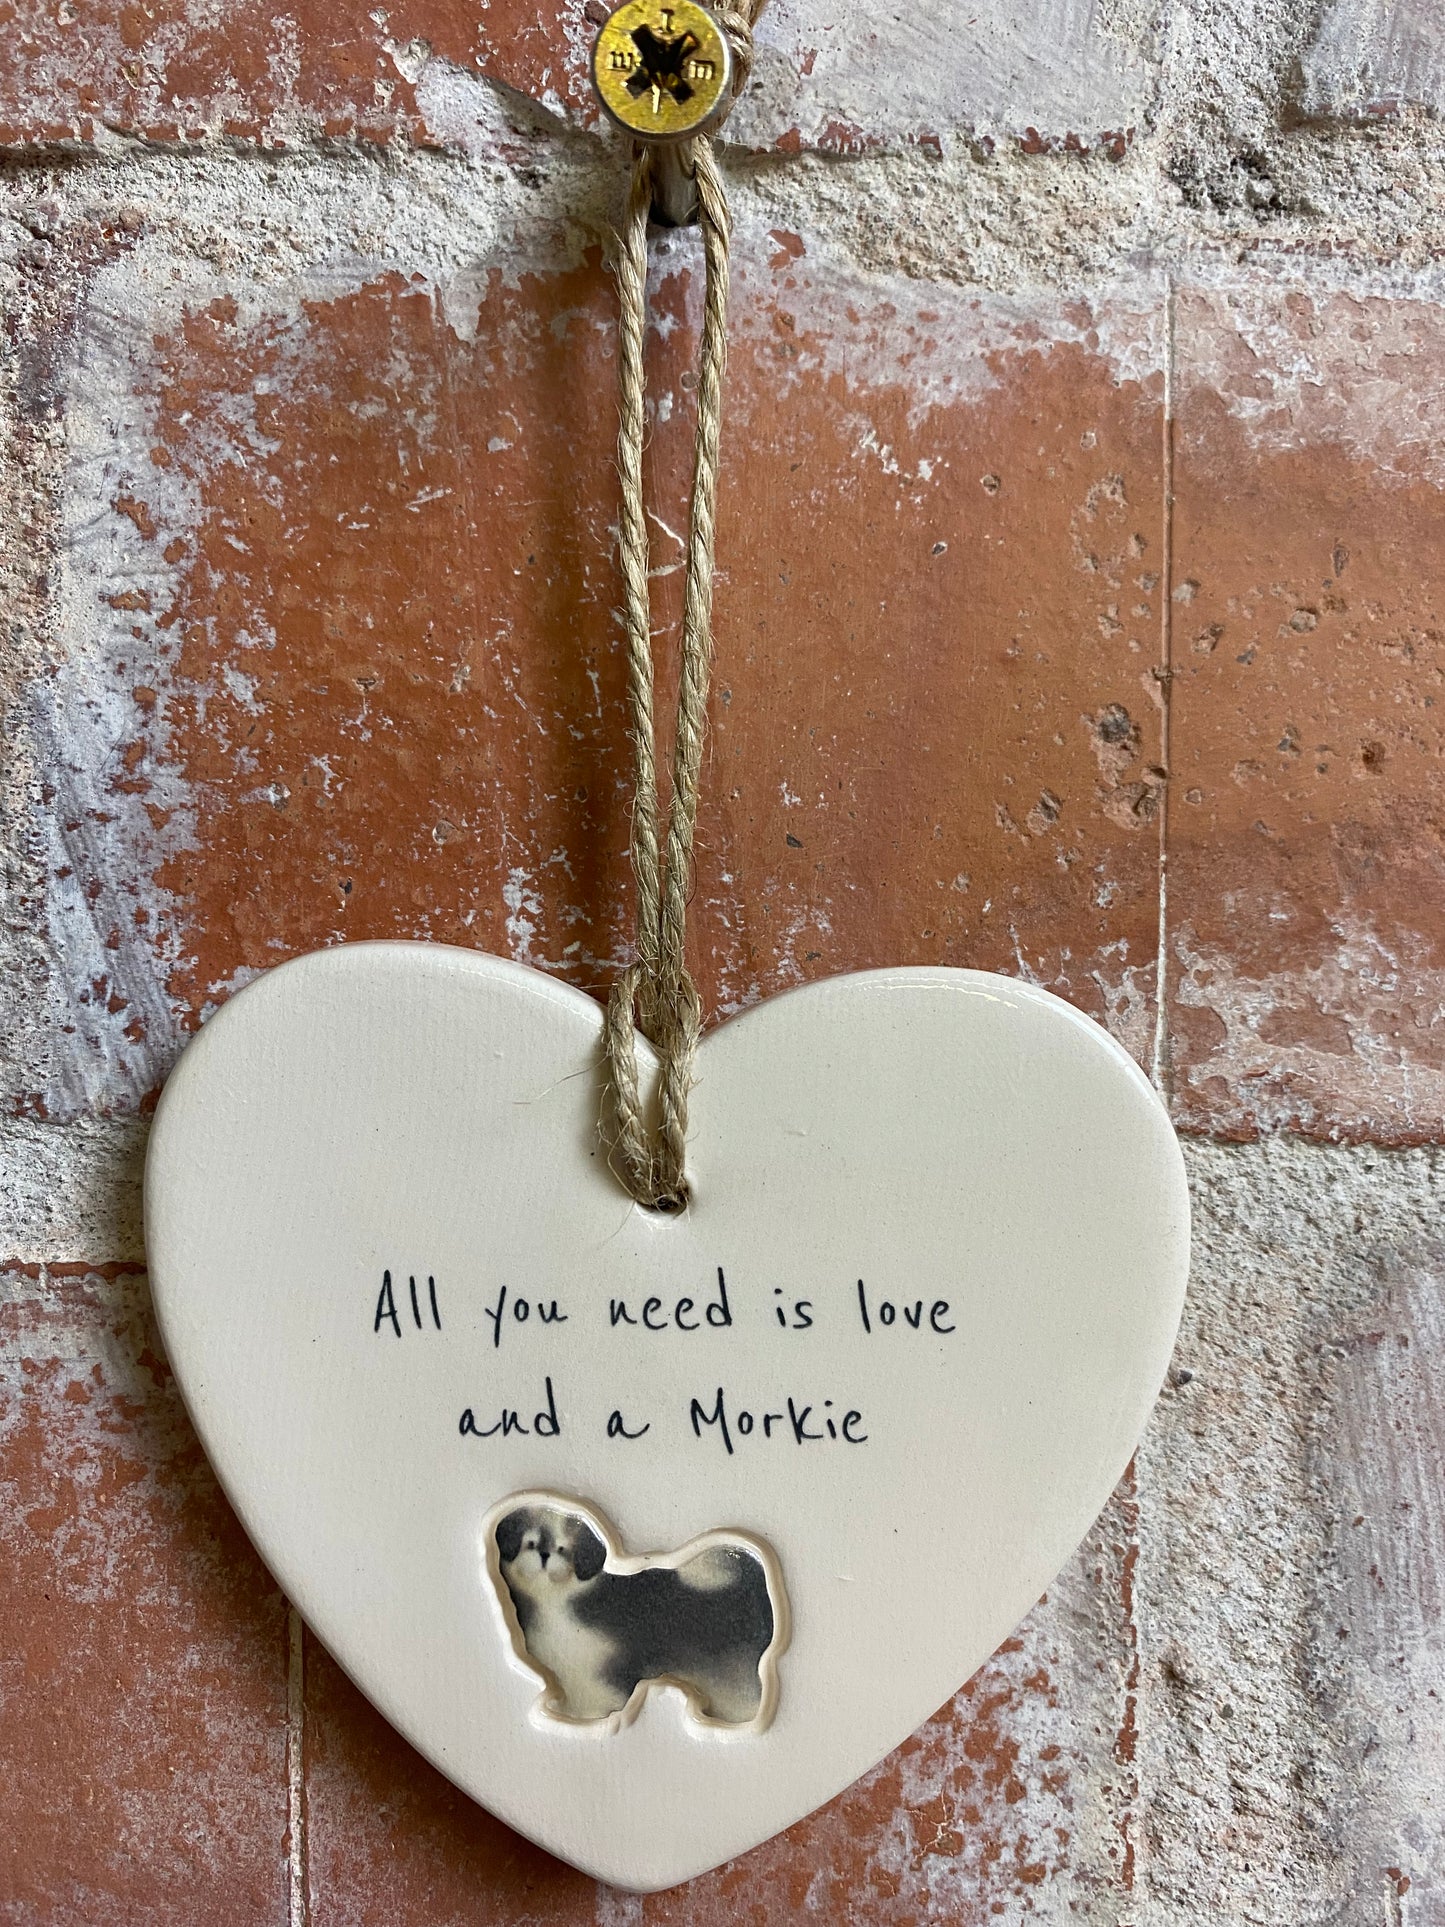 Morkie ceramic heart